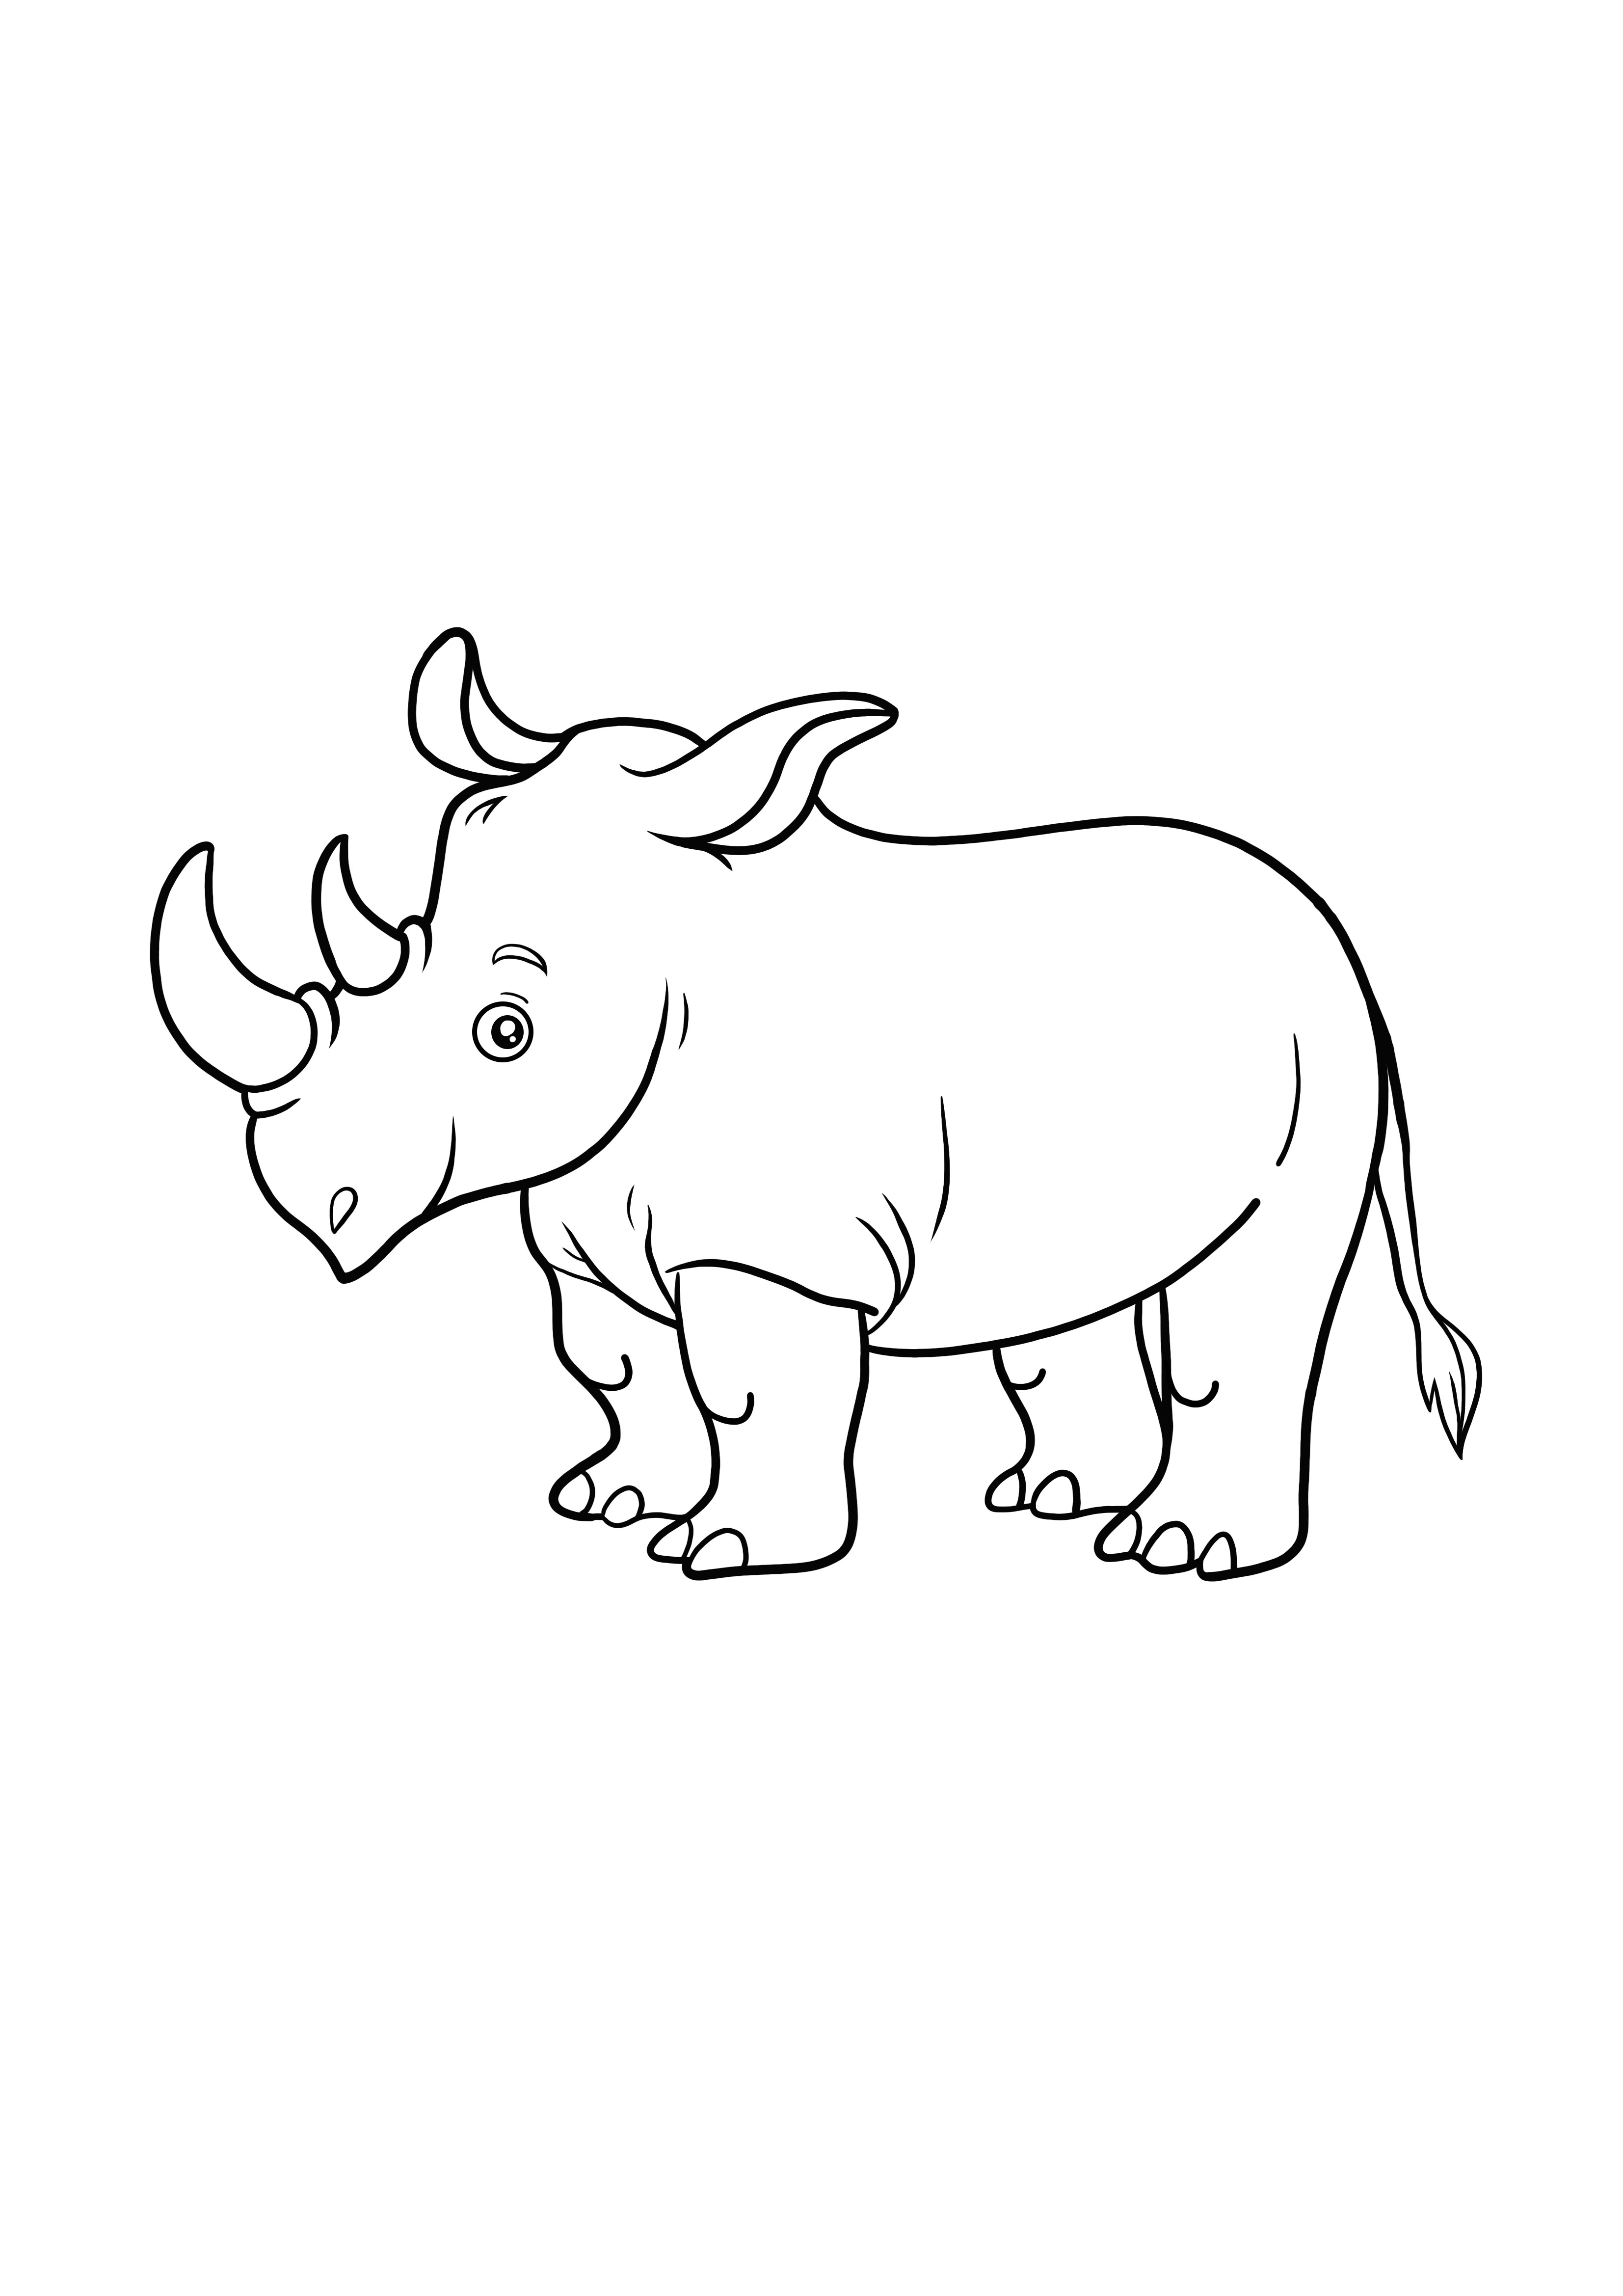 Rhino kolorowanka i łatwa do wydrukowania strona